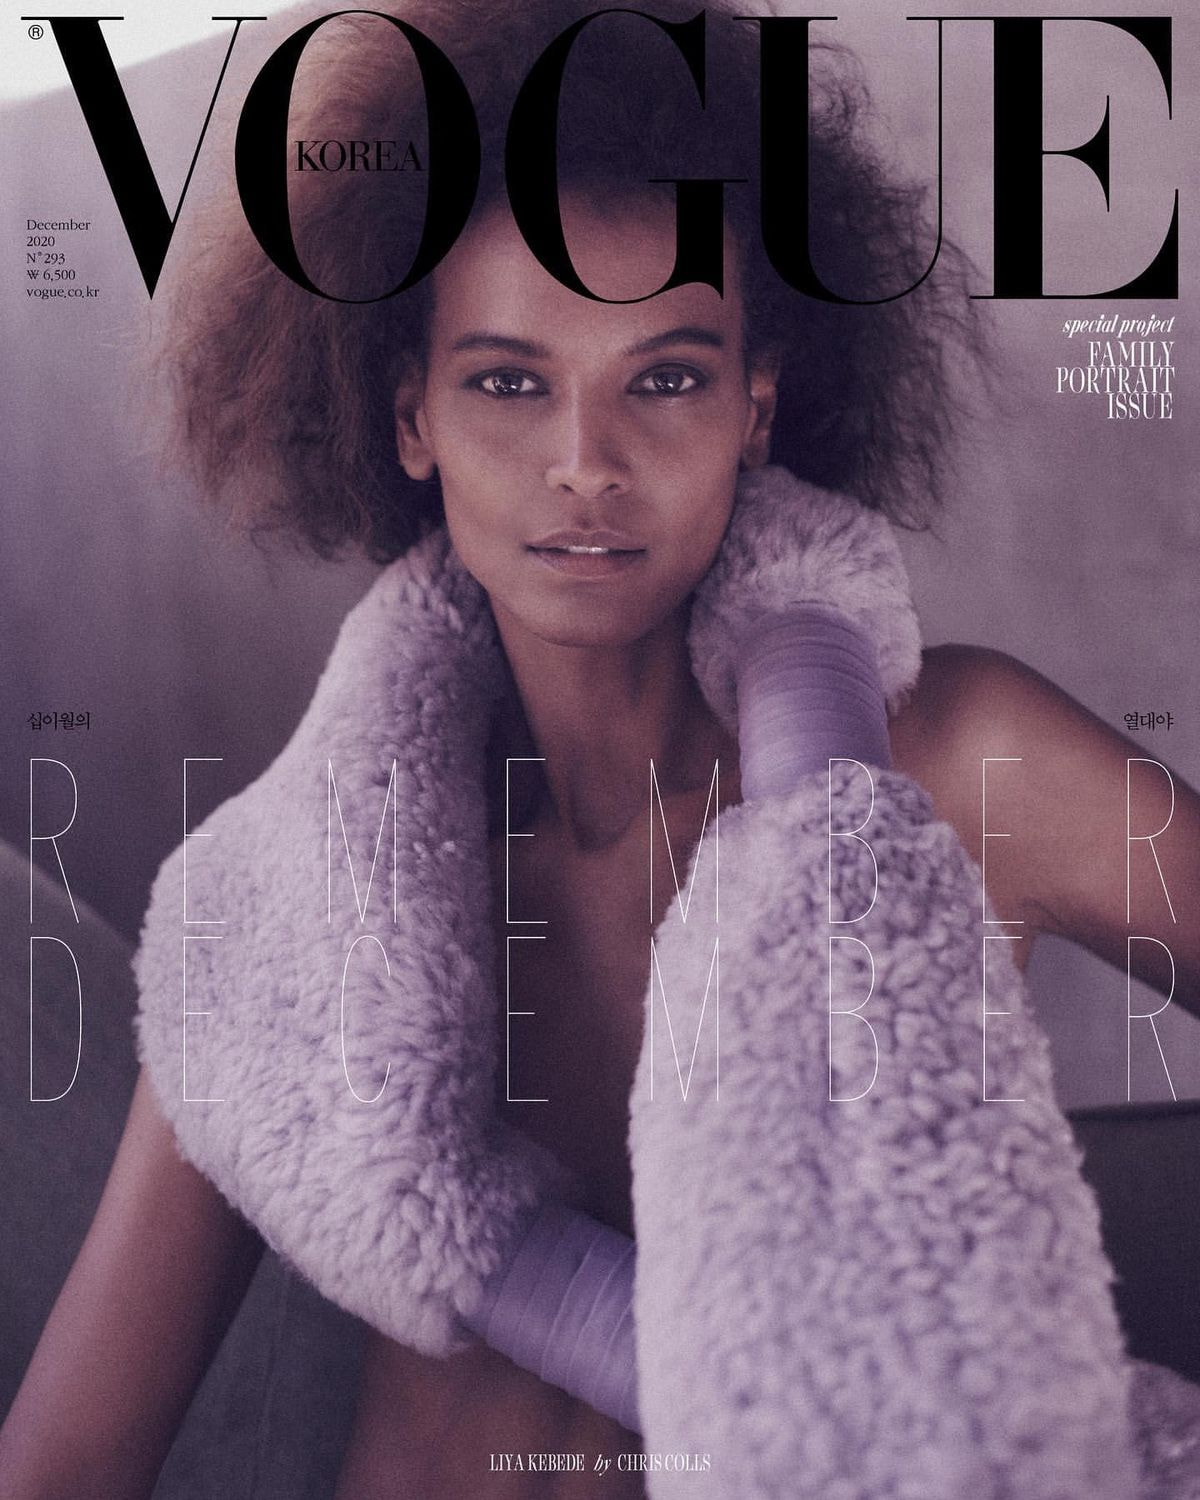 Liya Kebede covers Vogue Korea December 2020 by Chris Colls